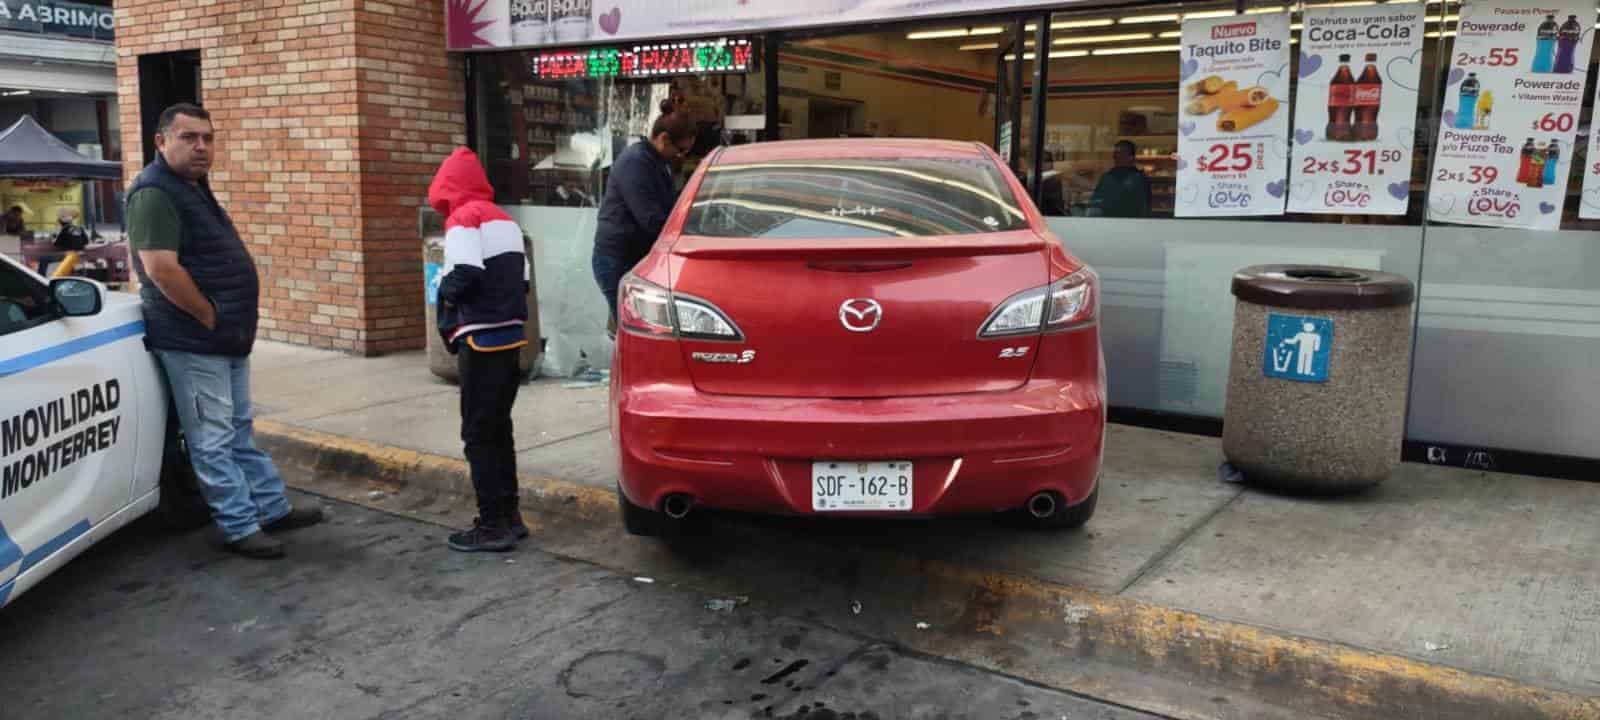 Después de confundirse de pedal y en lugar de frenar aceleró, la conductora de un vehículo se estrelló en la fachada de una tienda de conveniencia, ayer en el cruce de la Avenida Pino Suárez y Ocampo, centro de Monterrey.